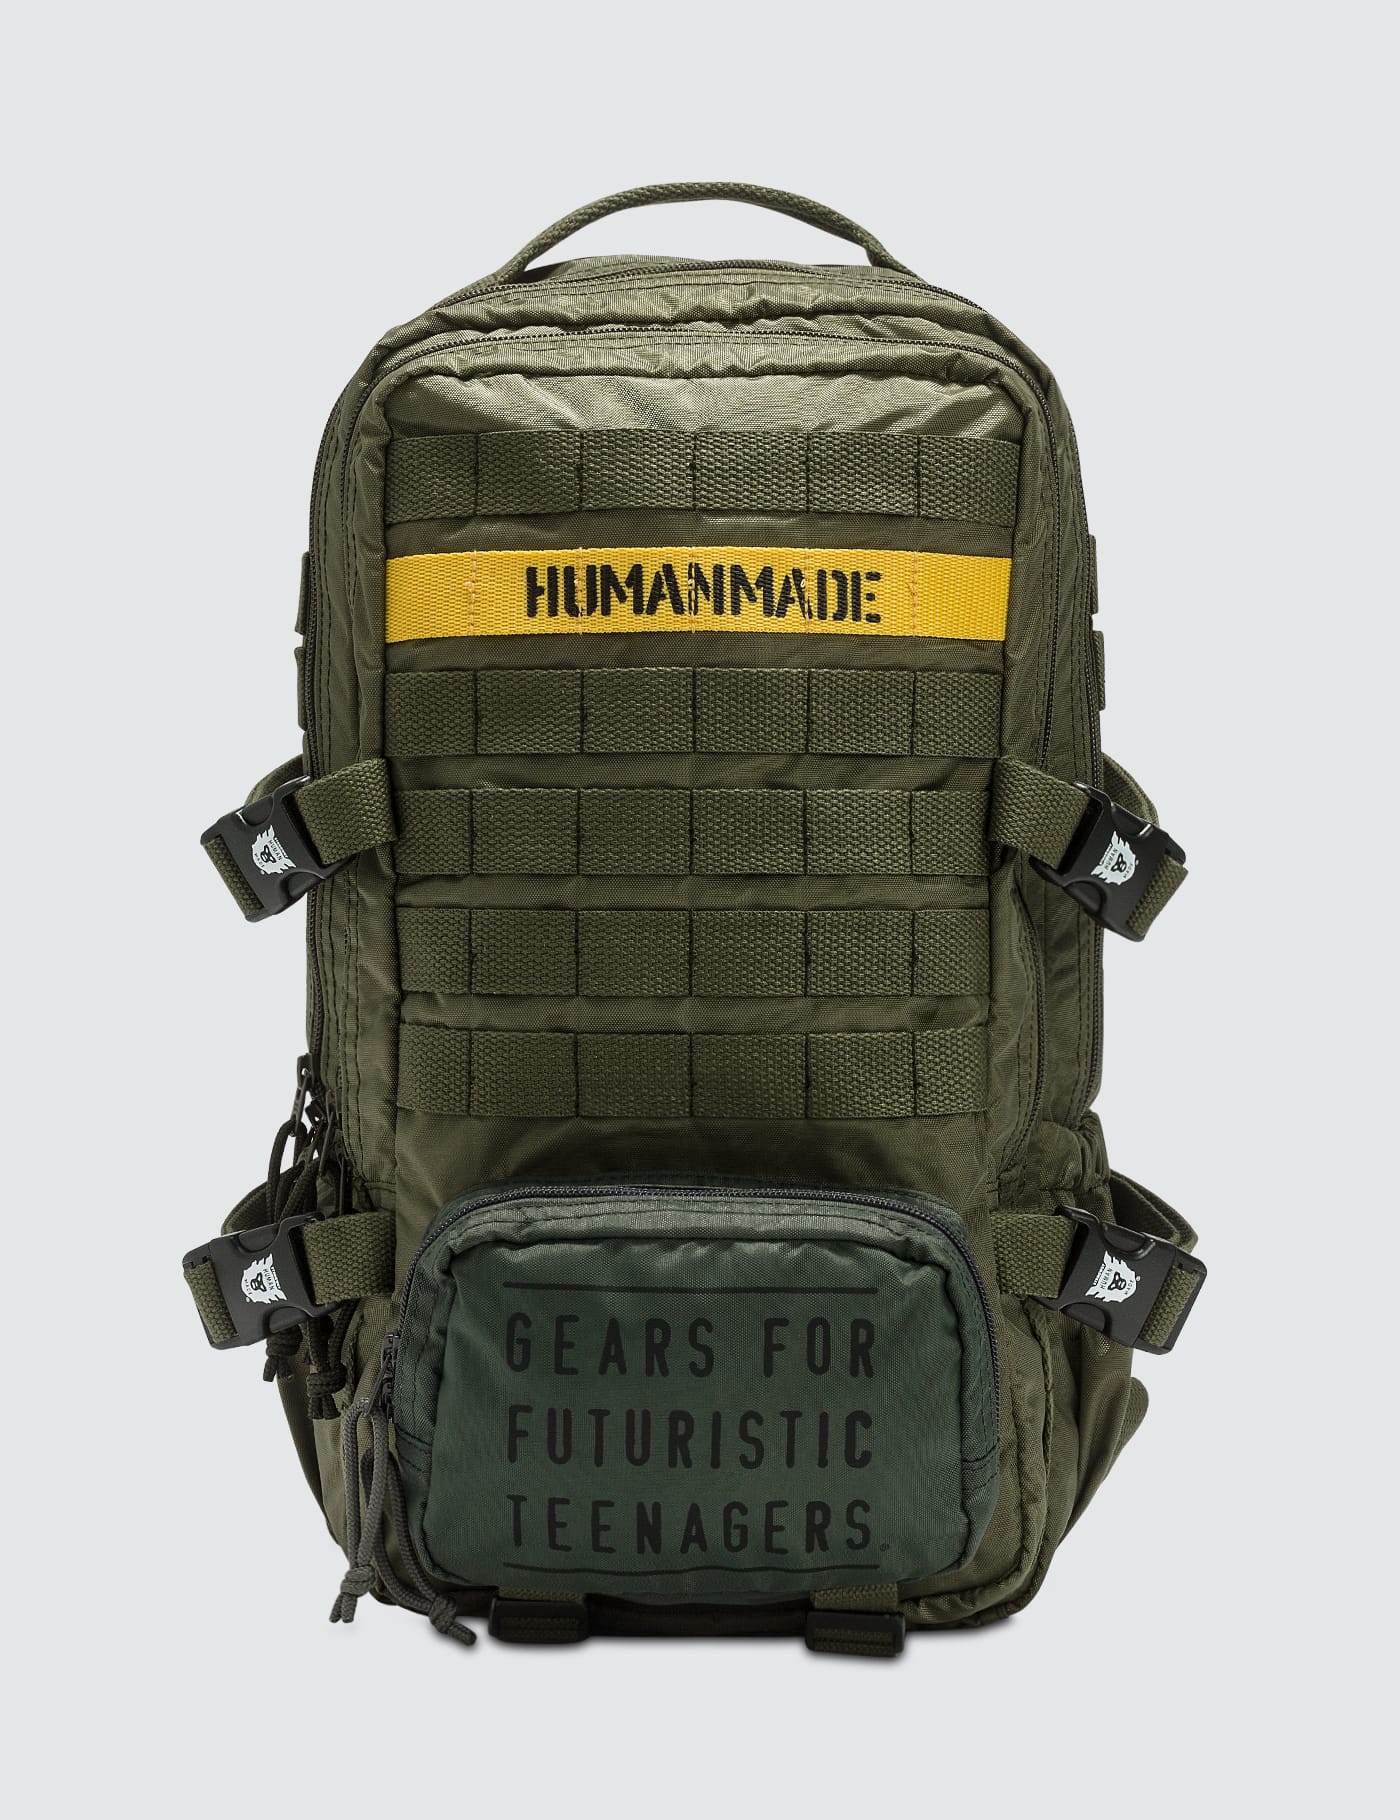 Human Made - Military Backpack | HBX - HYPEBEAST 为您搜罗全球潮流时尚品牌